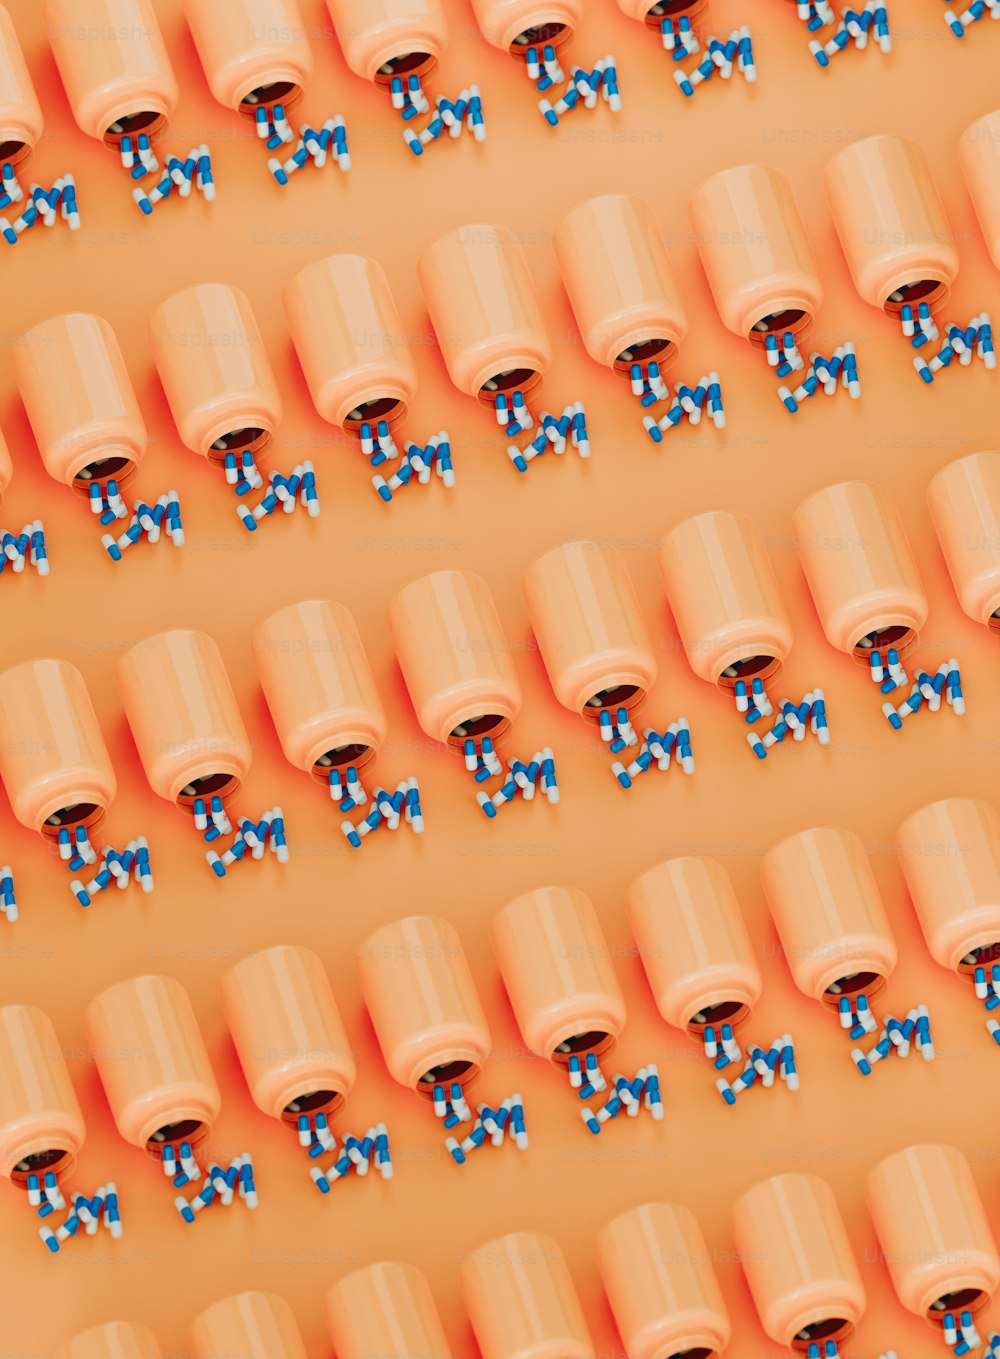 eine Gruppe orangefarbener Tassen mit blauen Schleifen darauf